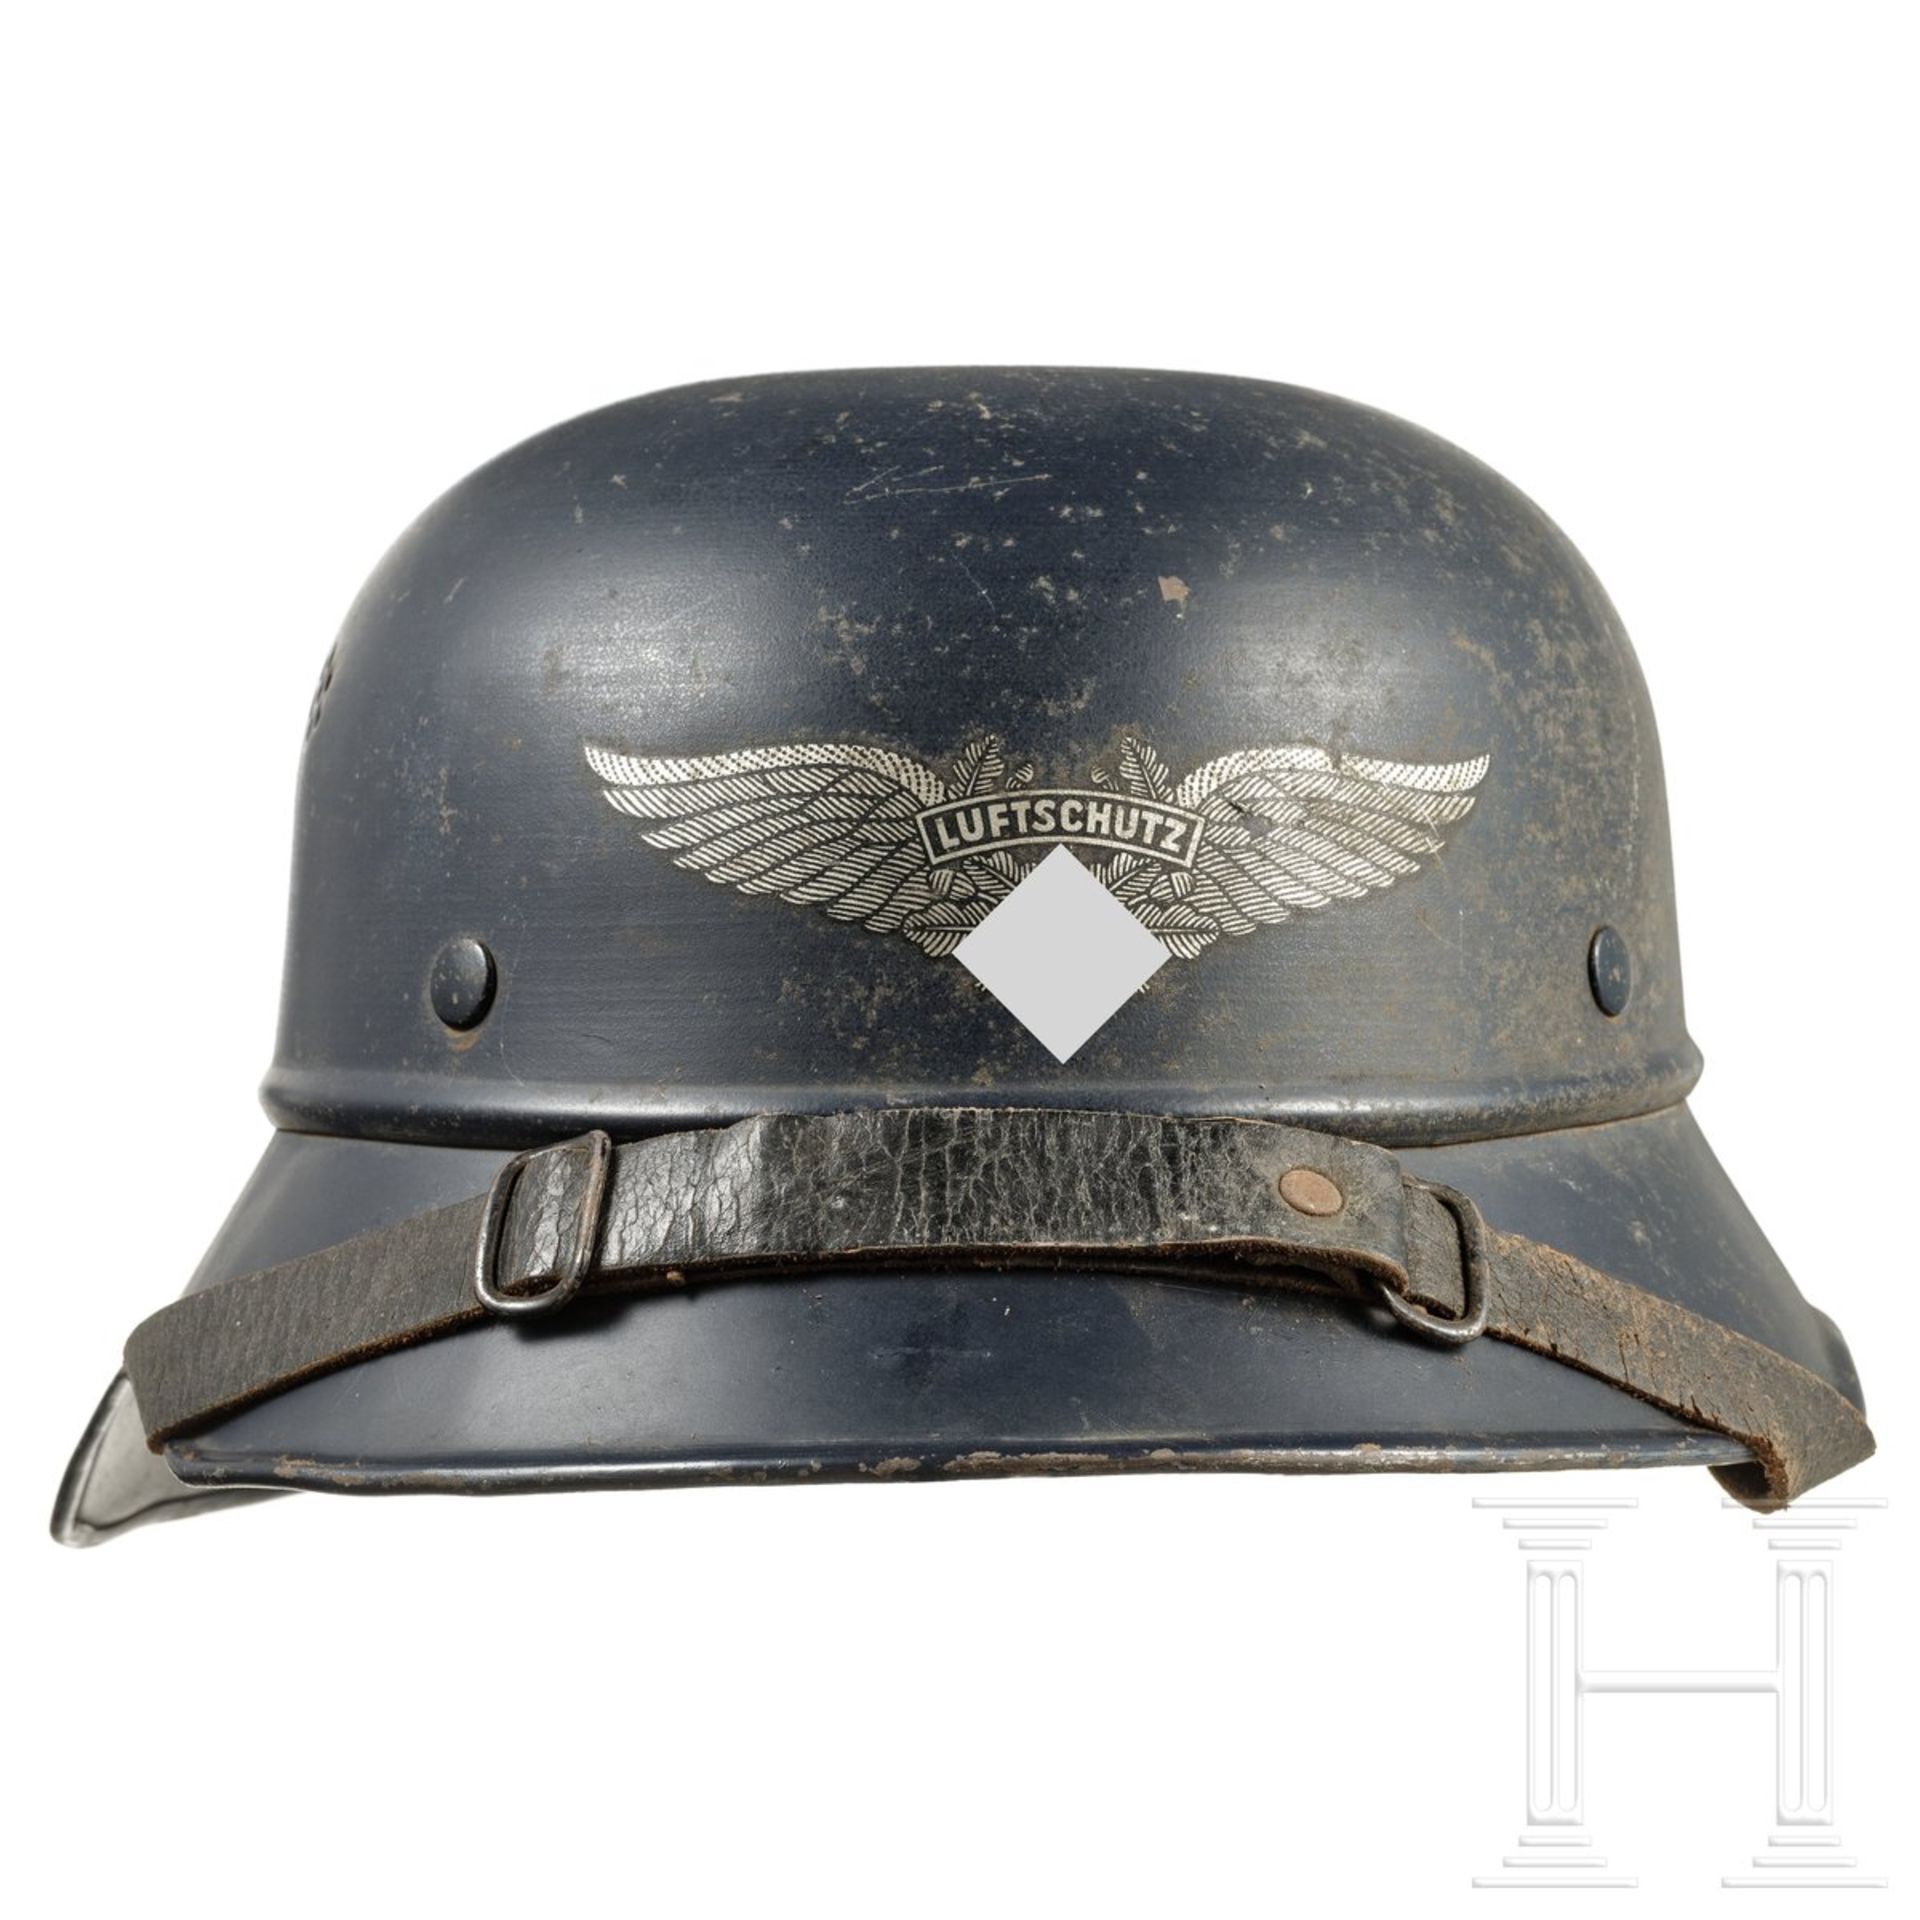 Deutscher Stahlhelm "Gladiator" für Luftschutz, um 1940 - Image 3 of 6